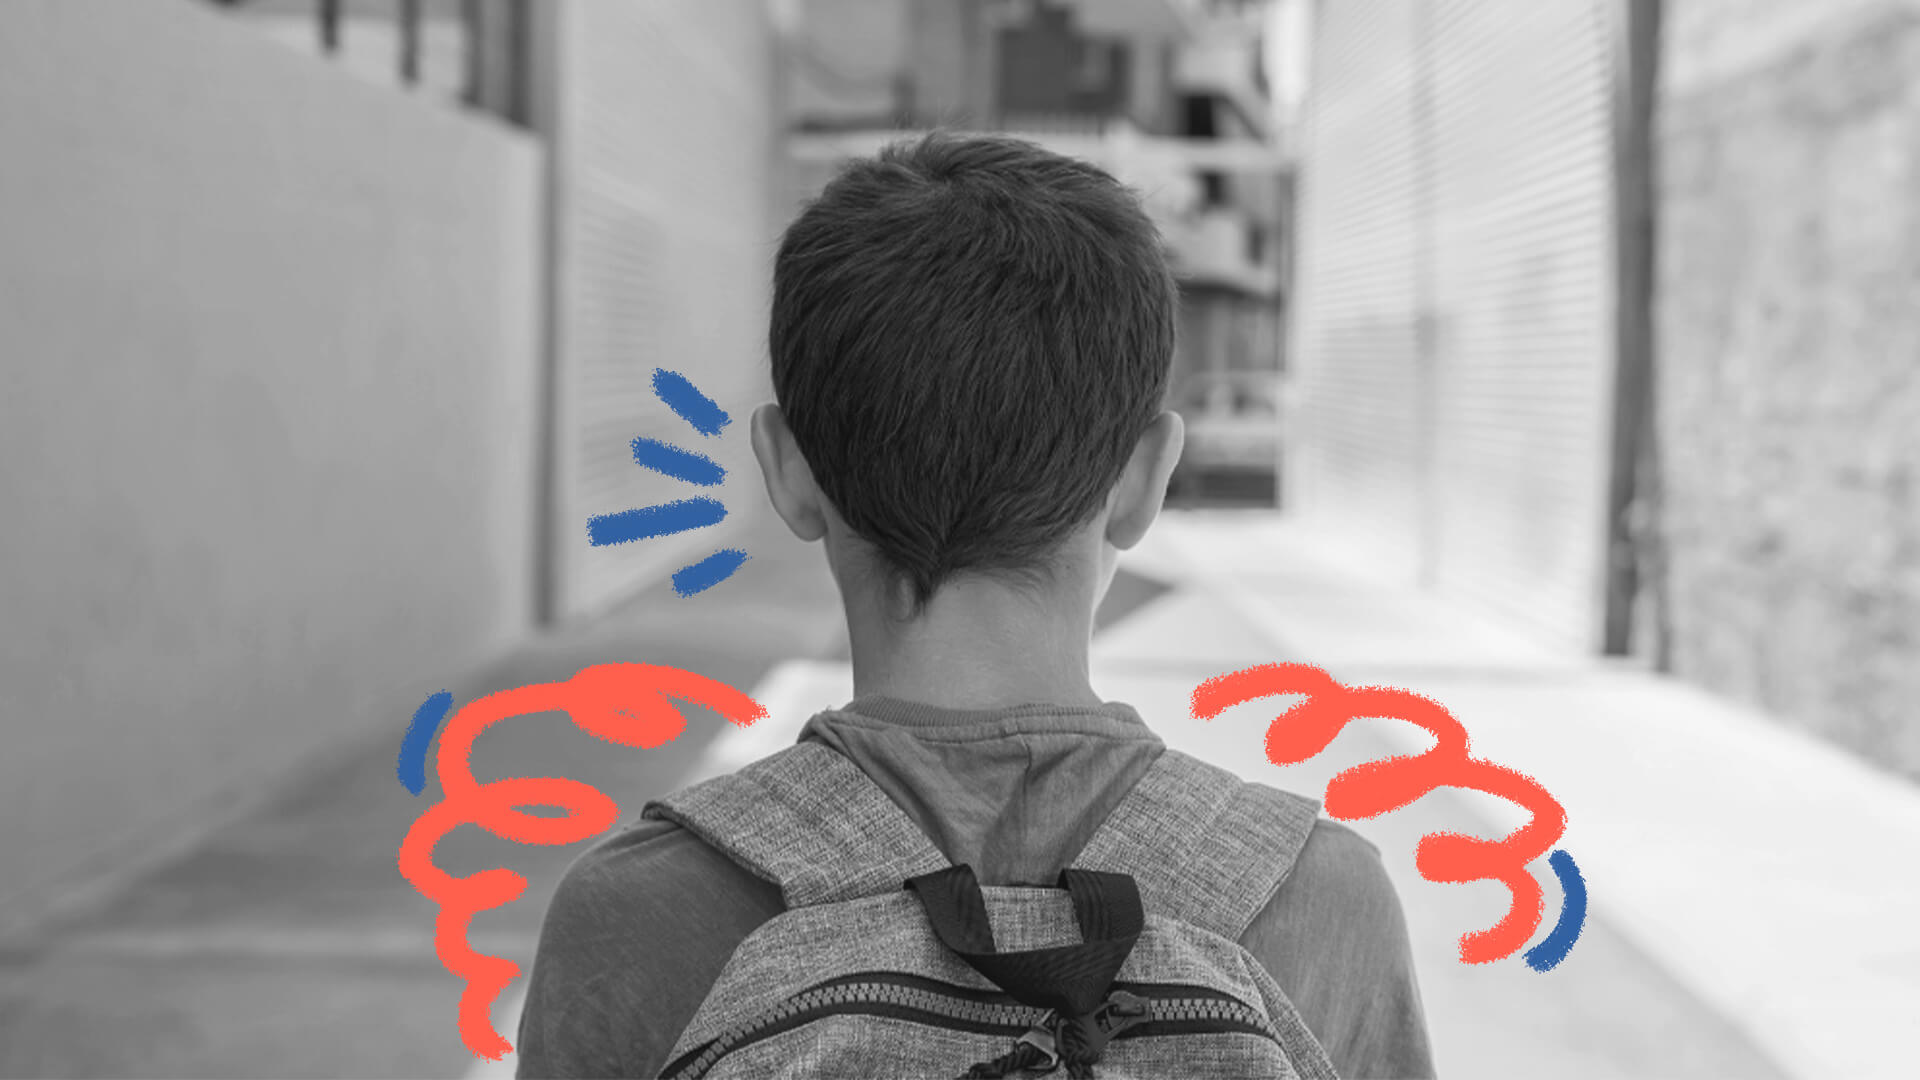 Imagem em preto e branco de um menino branco, de costas, com uma mochila nas costas. A imagem ilustra matéria de ameaças às escolas.